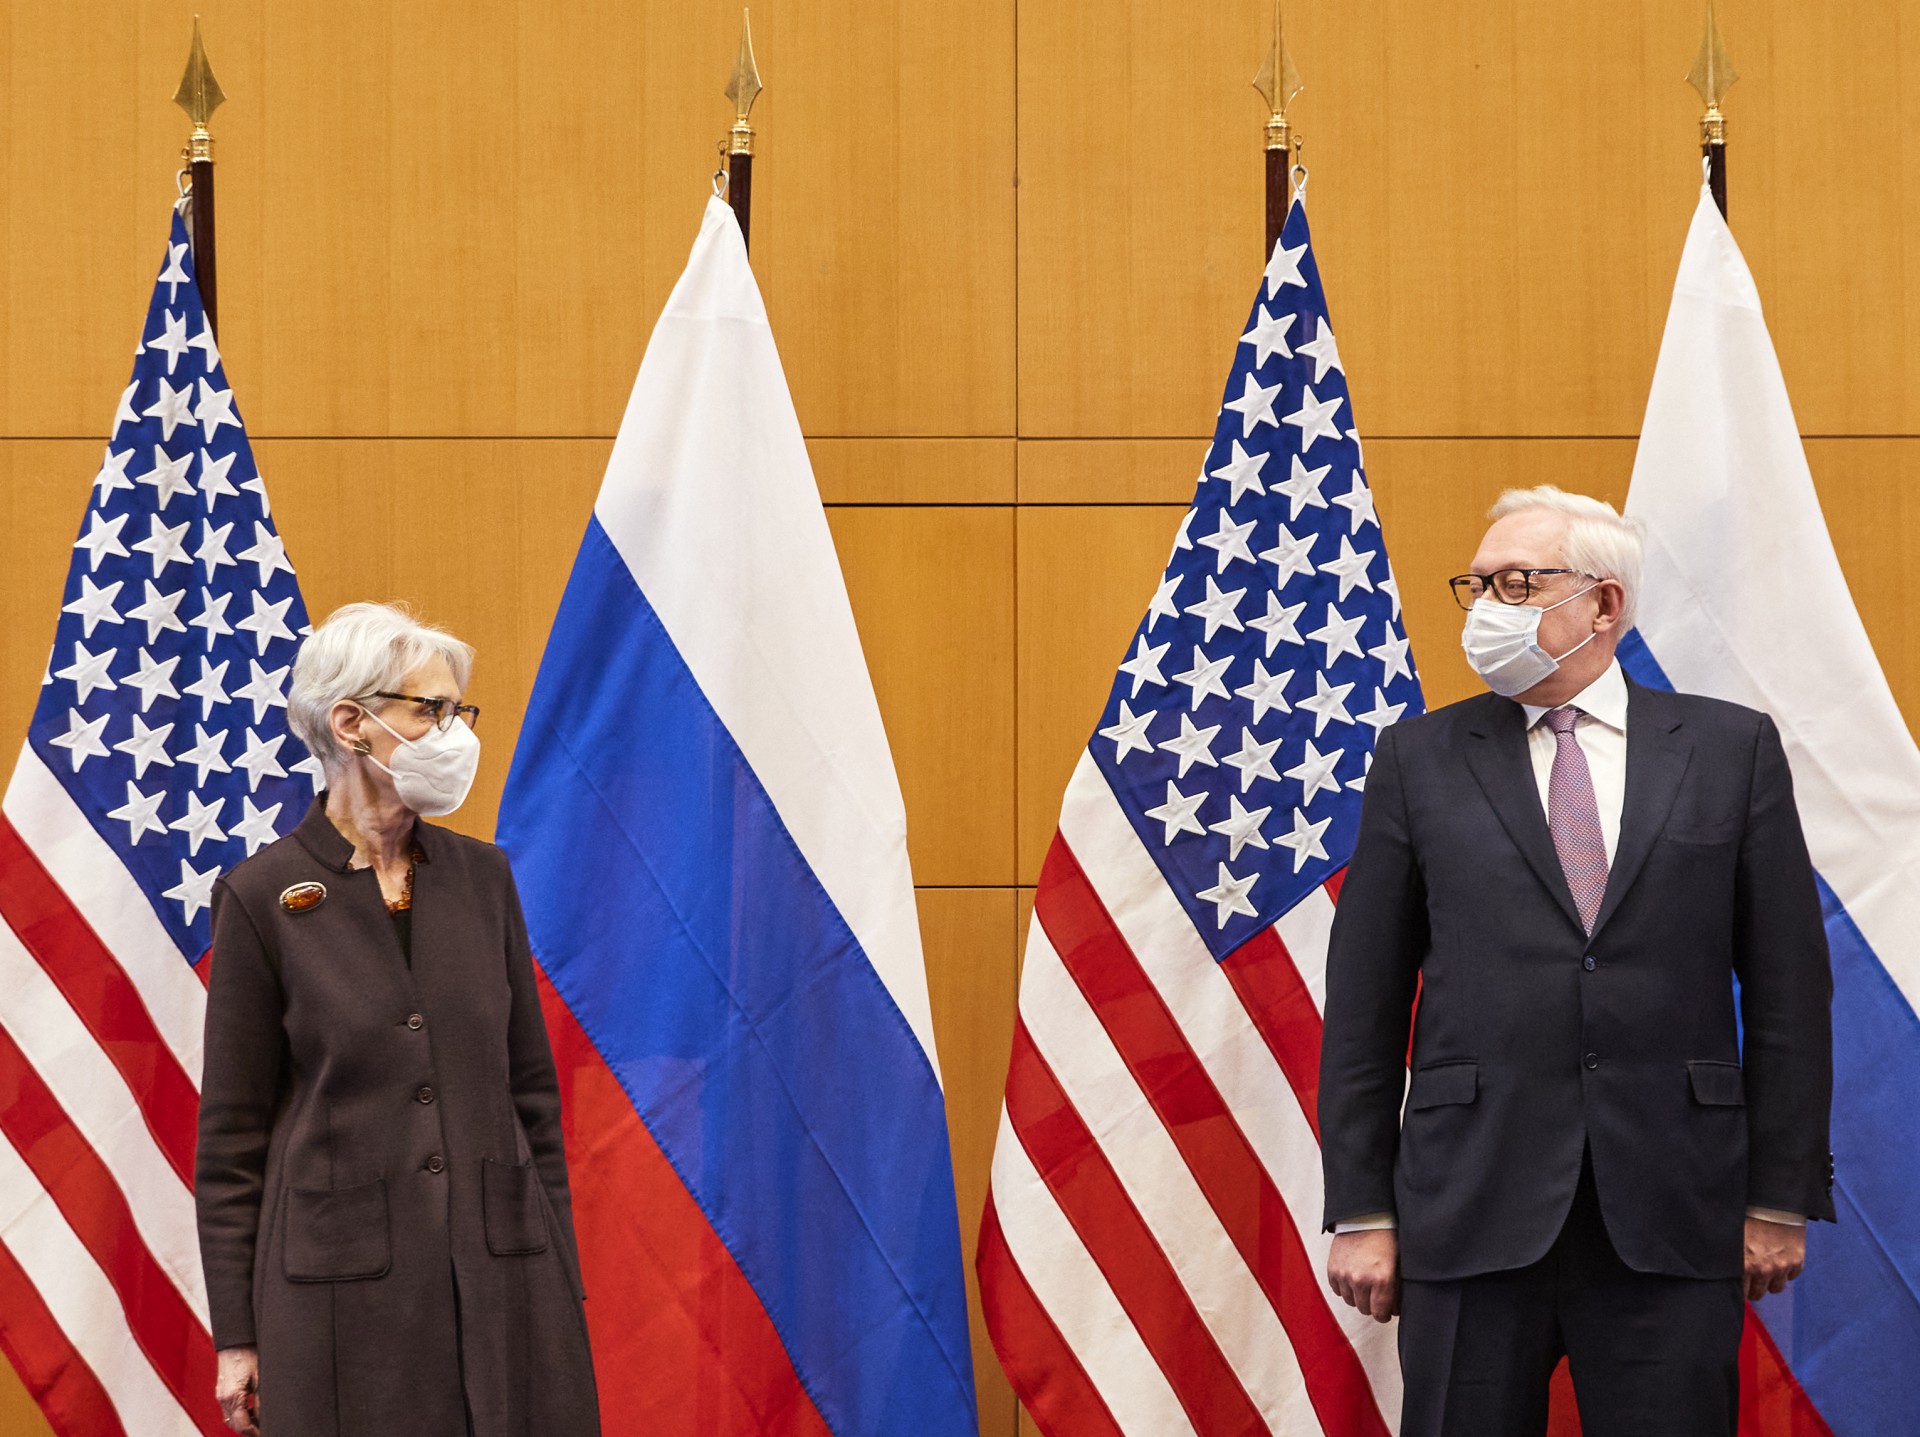 A vice-secretária de Estado dos EUA Wendy Sherman (E) e o vice-ministro das Relações Exteriores da Rússia, Sergei Ryabkov (D) posam para fotos enquanto participam de negociações de segurança sobre as crescentes tensões na Ucrânia, na Missão Permanente dos EUA, em Genebra, em 10 de janeiro de 2022.(Foto: DENIS BALIBOUSE / POOL / AFP)